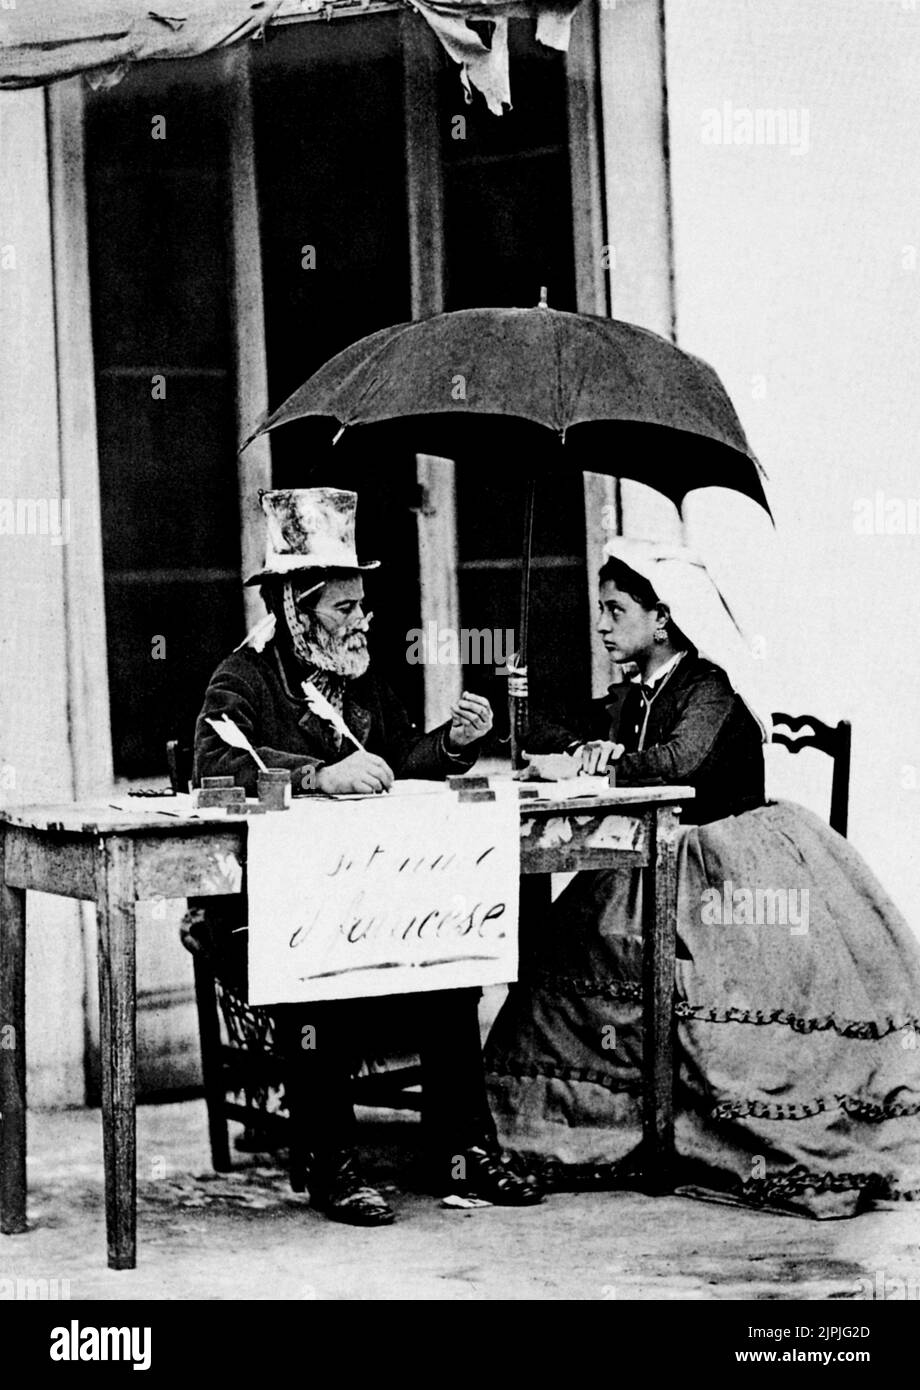 1870 aprox. , Nápoles , Italia : Una fotografía popular de GIORGIO SOMMER al secretario pubblico Lo SCRIVANO PUBBLICO - Si treduce dal francese ) - NAPOLI - FOLKLORE - SCENA POPOLARE - FOTO STORICA - HISTORIA - sombrero - cappello a cilindro - penna d' oca - ombrelo - paraguas - traduttore - traslator --- Archivio GBB Foto de stock